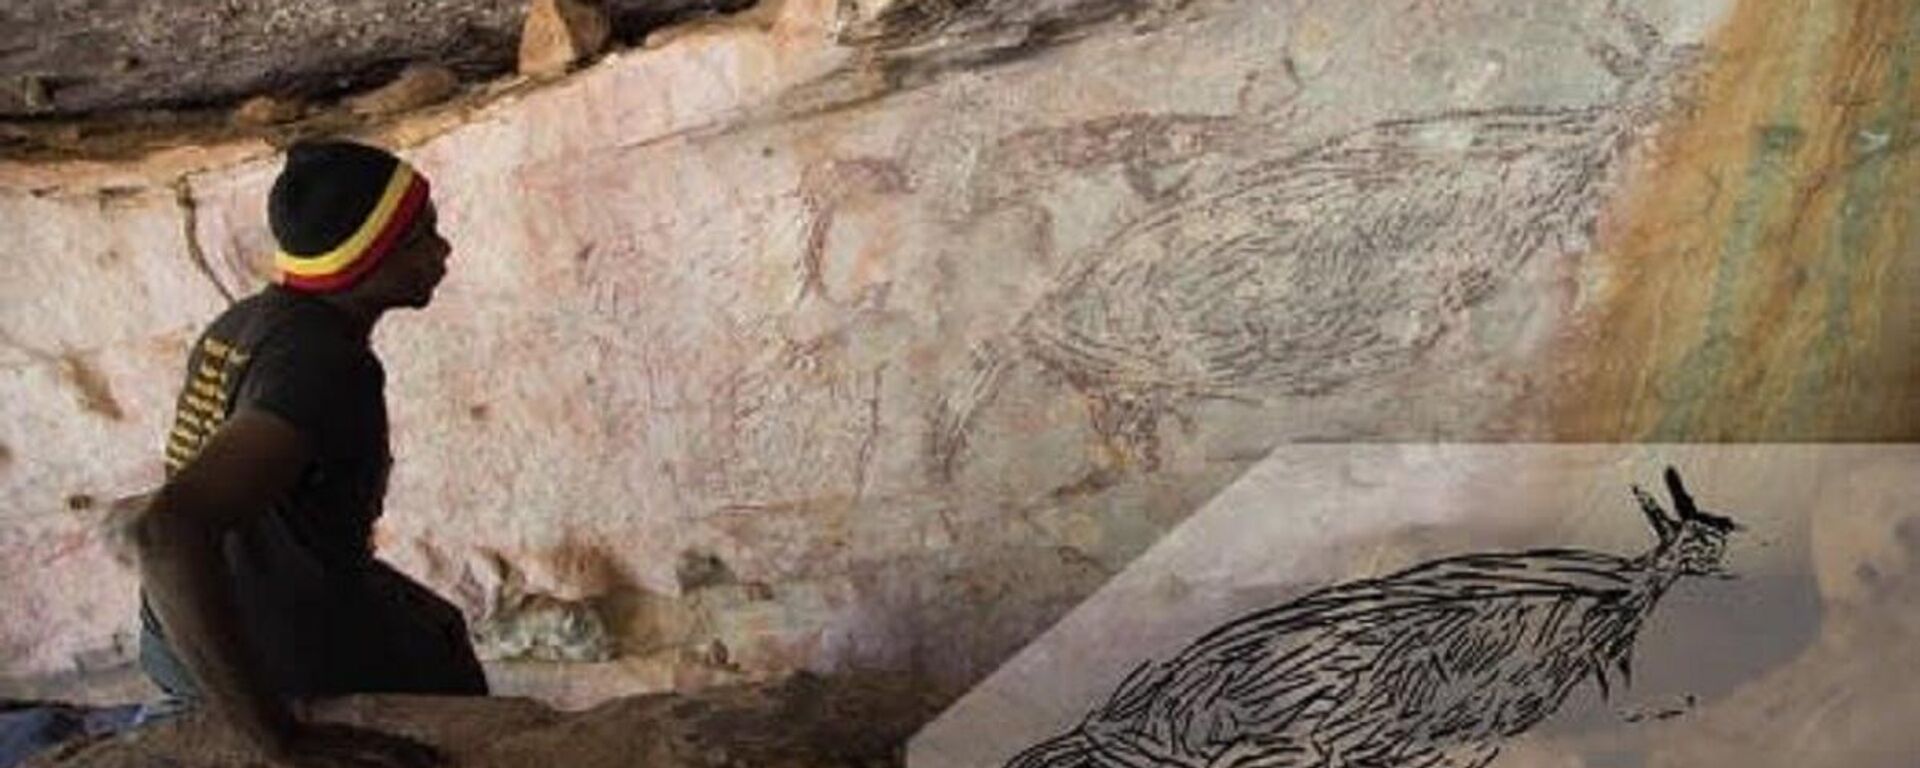 El dibujo rupestre más antiguo de Australia que tiene edad de más de 17.000 años - Sputnik Mundo, 1920, 23.02.2021